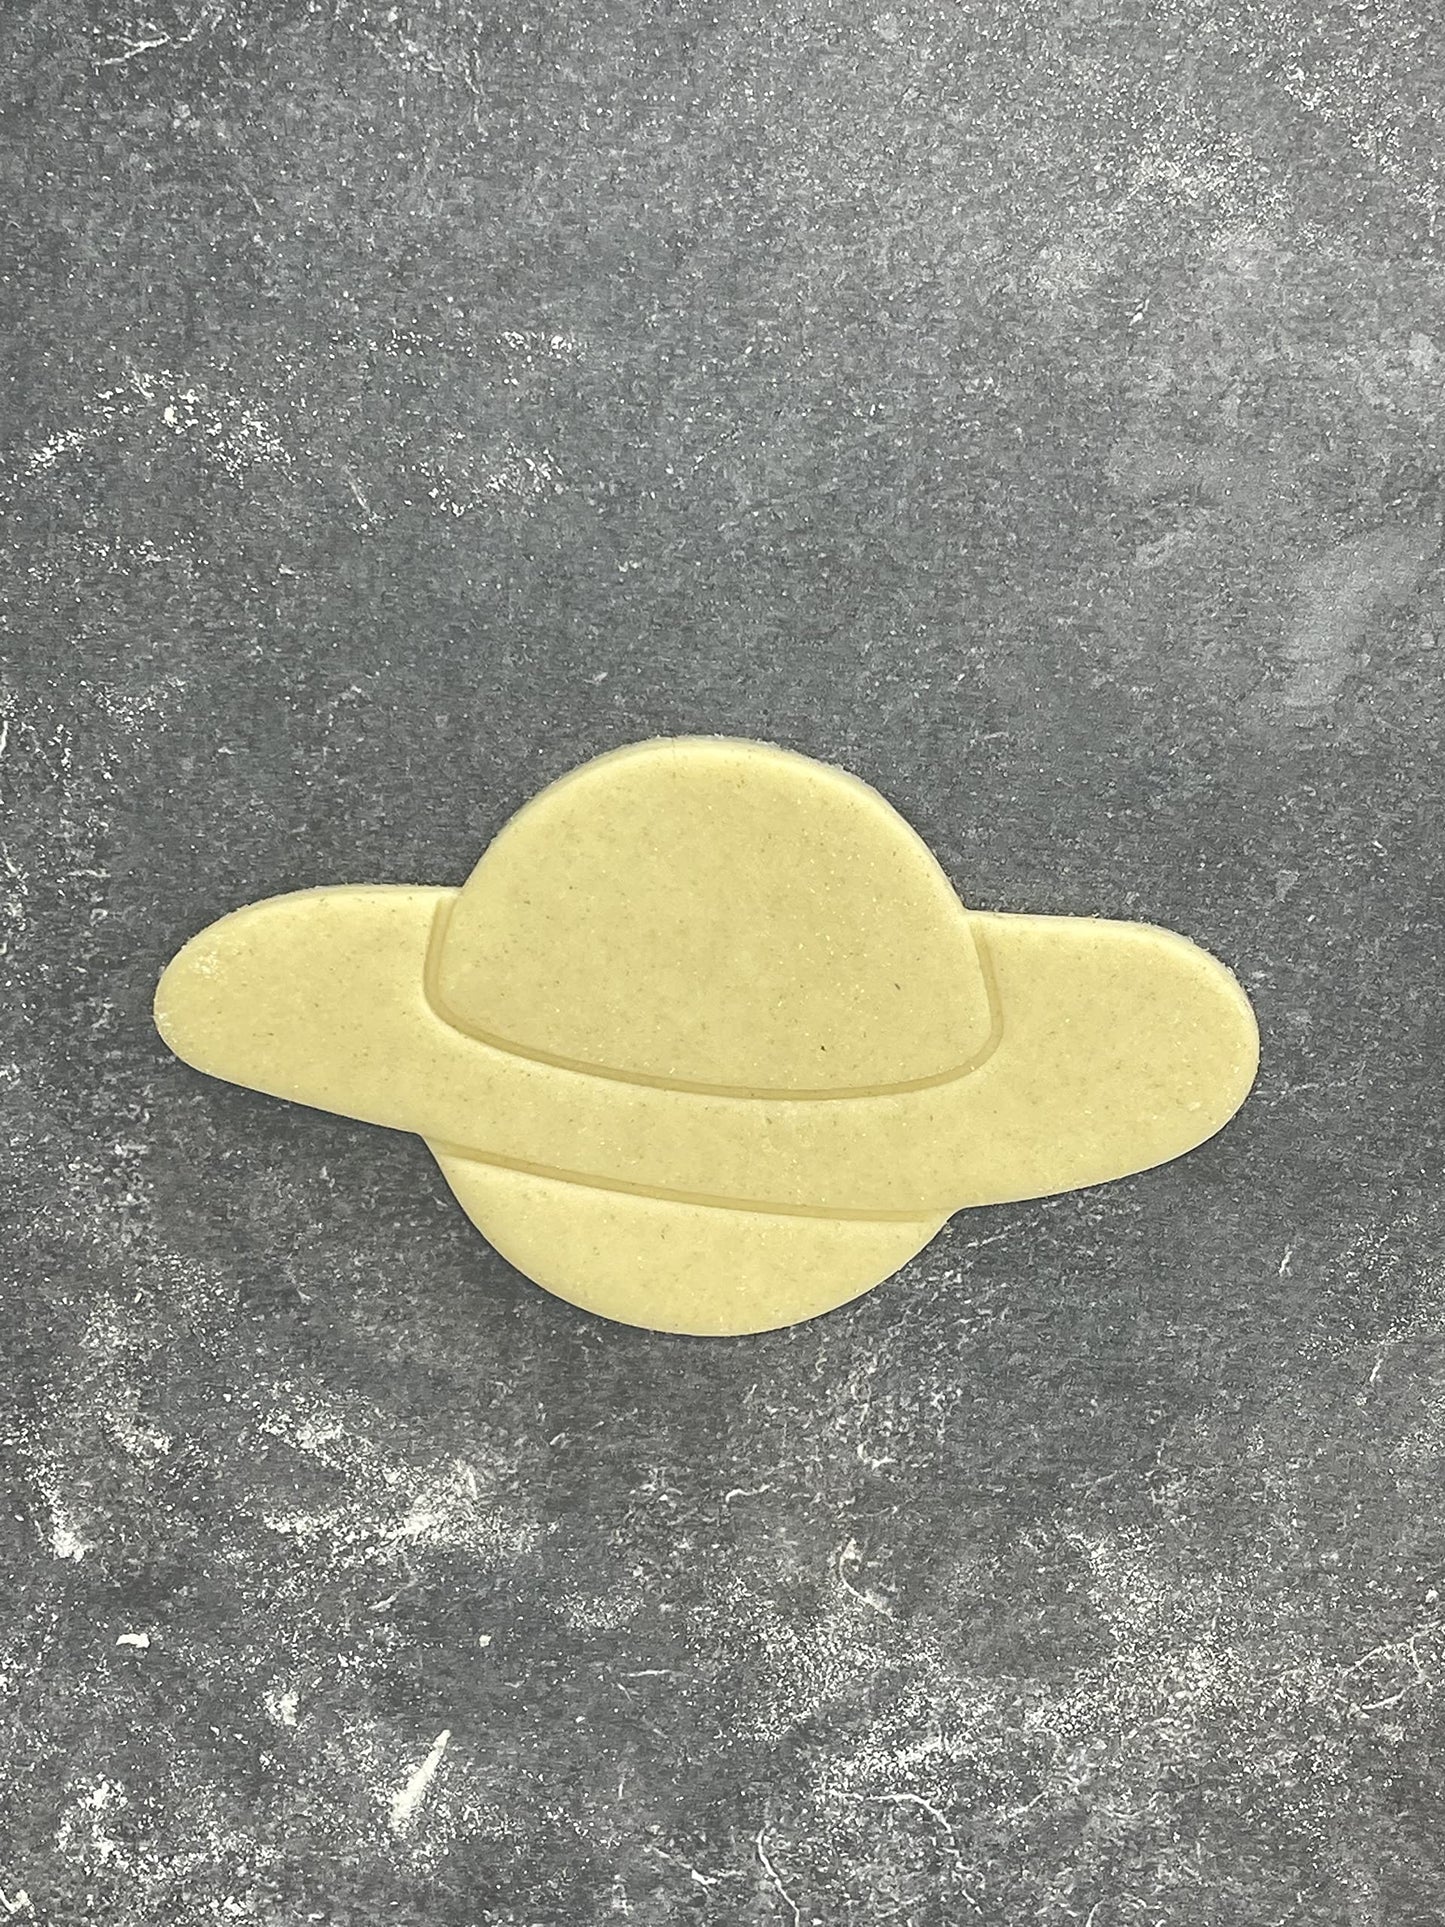 Emporte pièce Planete - Forme - pour la réalisaton de biscuit sablé, patisserie, pate à sucre -Décoration gateau-Fait maison- ELACE